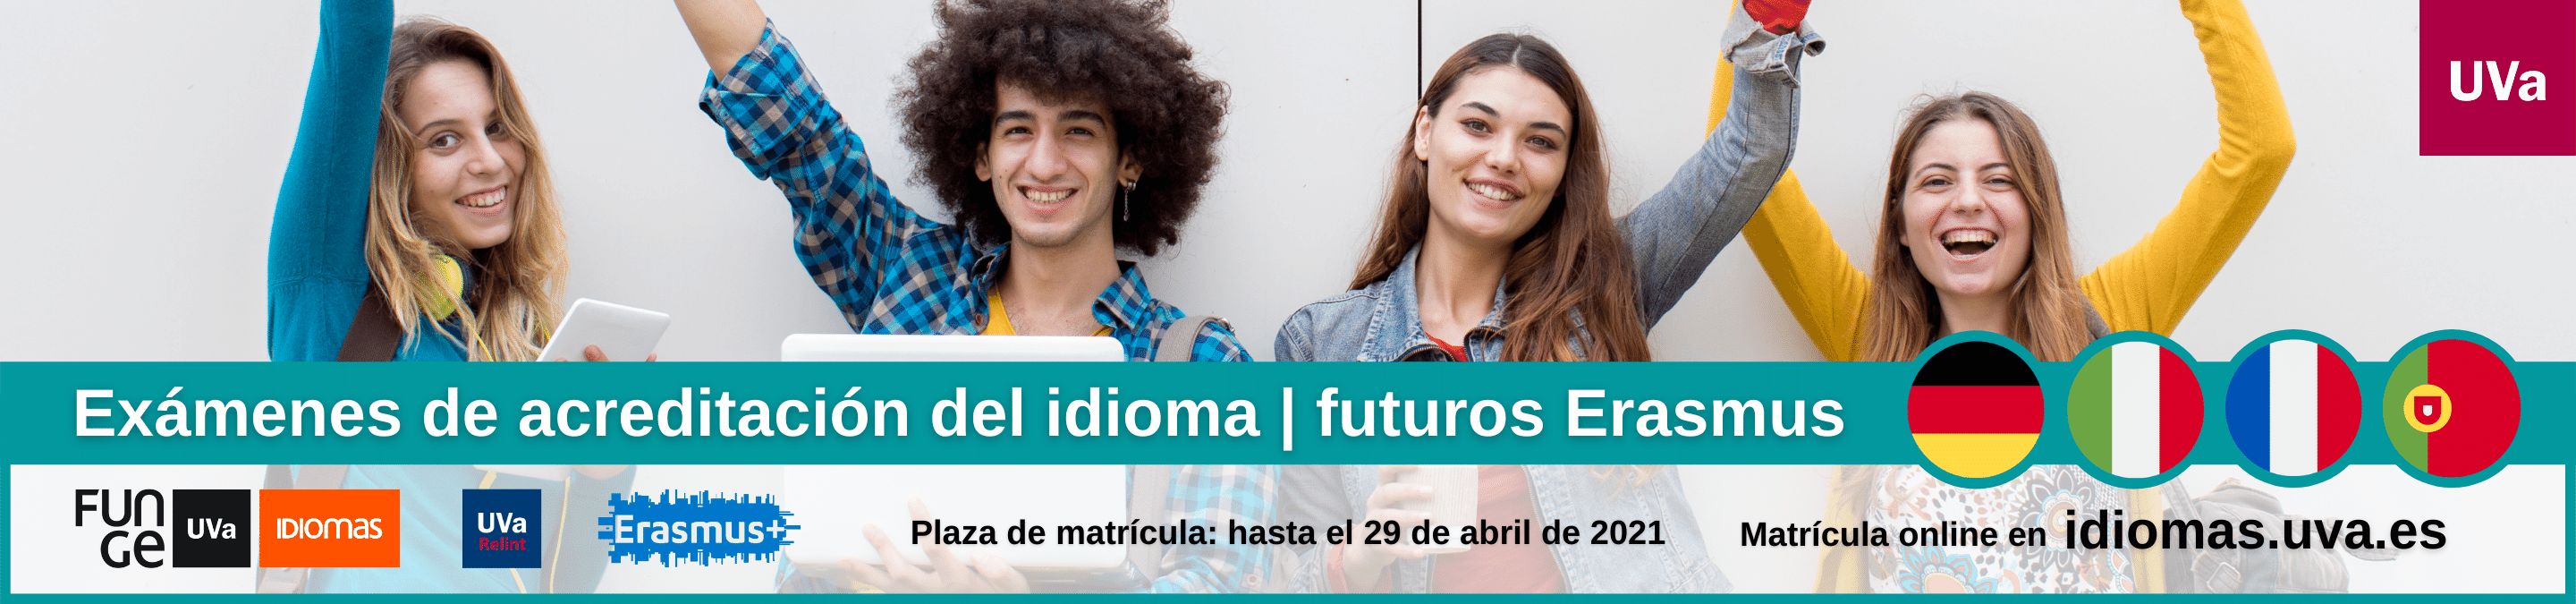 Banner examenes de acreditacion idiomas Erasmus frances aleman italiano portugues Centro de Idiomas Universidad de Valladolid